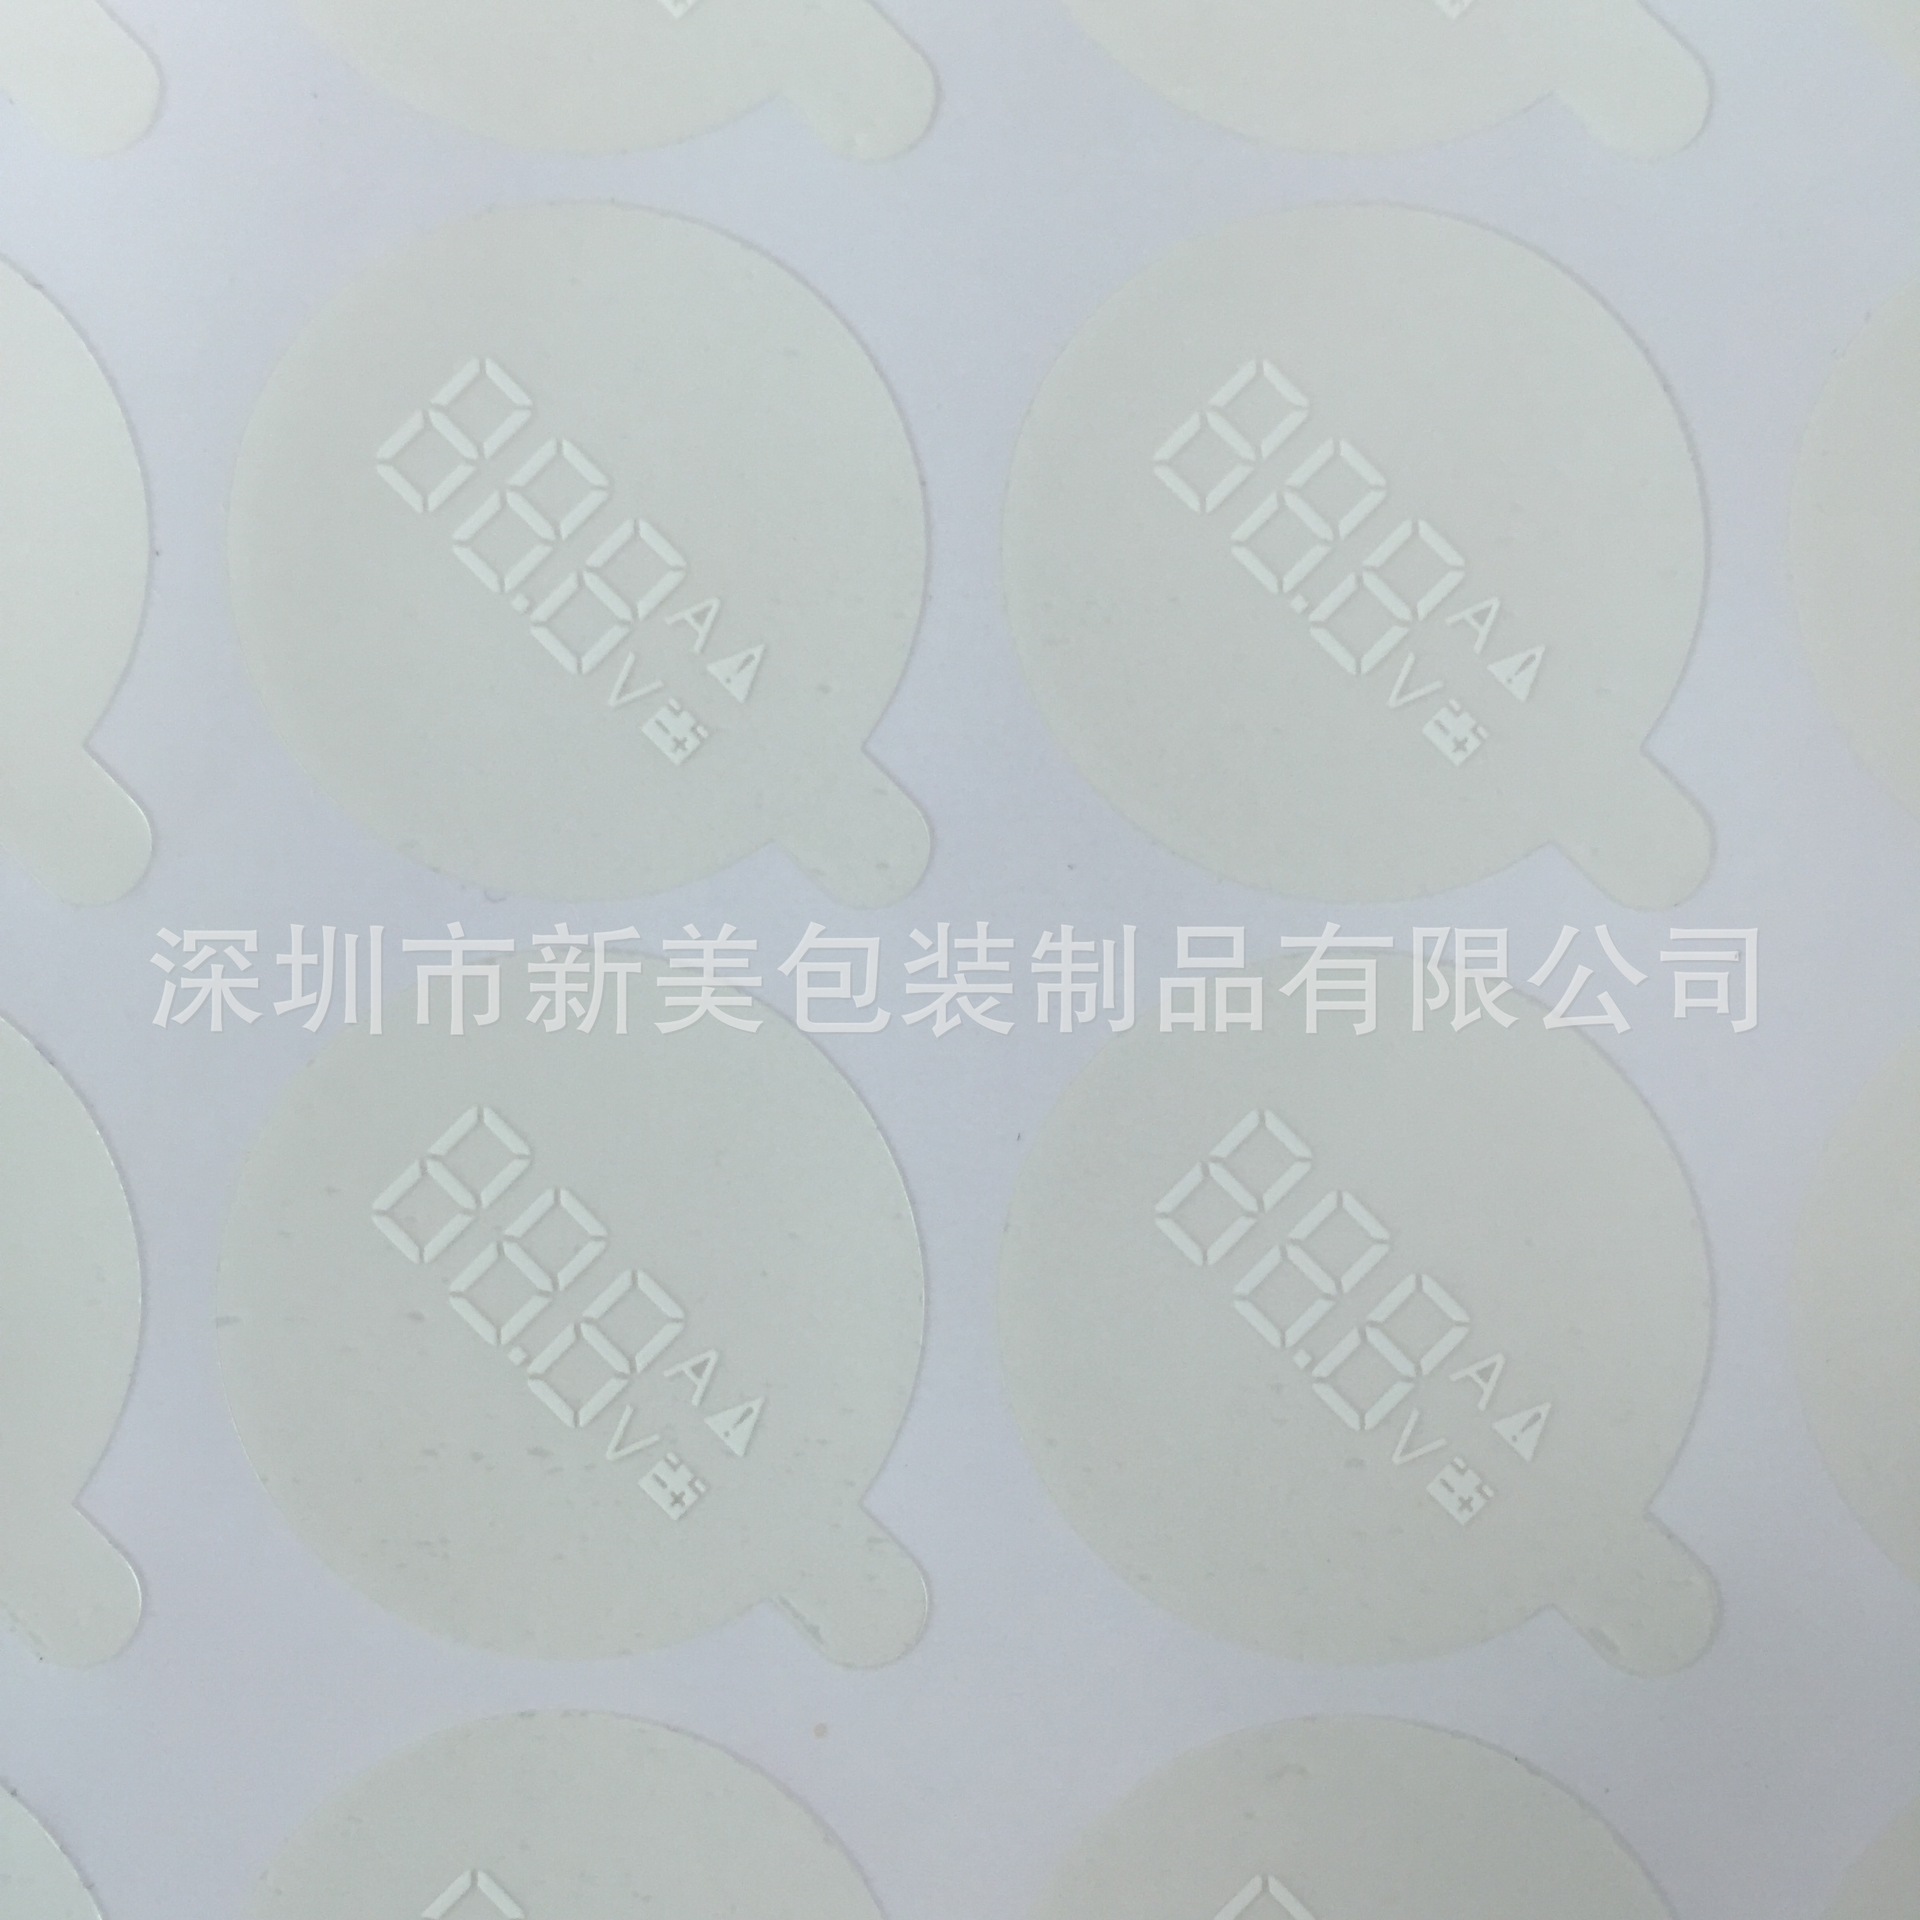 深圳市金色PET保护膜厂家工厂定做 PET保护膜印刷 透明不干胶印刷 PVC静电膜印刷 金色PET保护膜